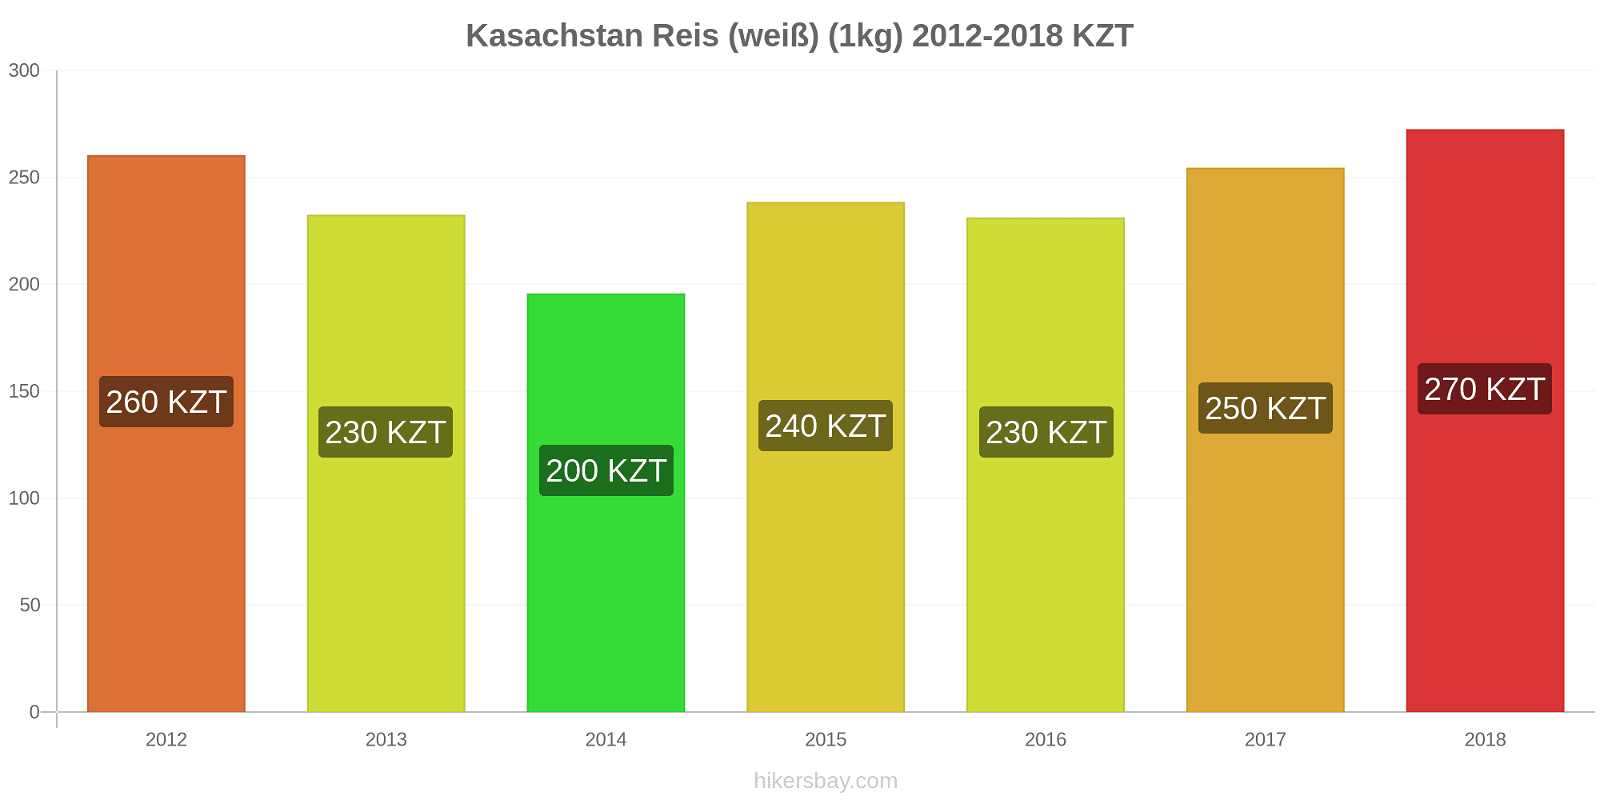 Kasachstan Preisänderungen Reis (weiß) (1kg) hikersbay.com